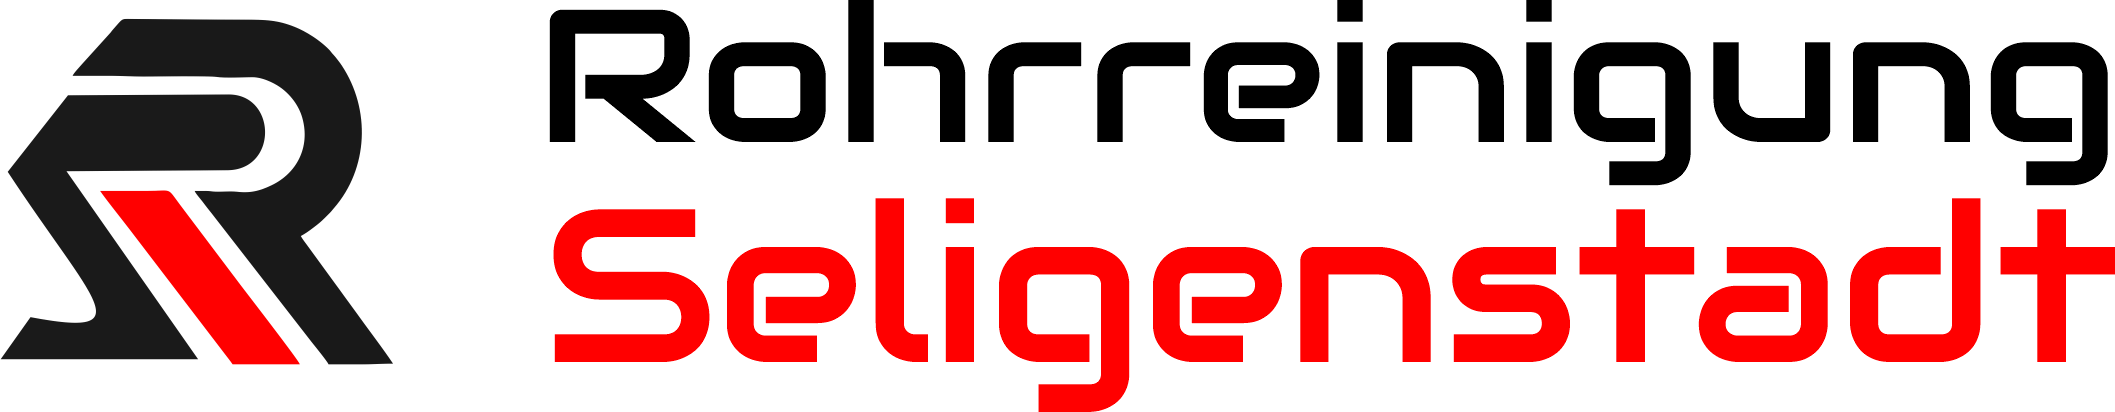 Rohrreinigung Seligenstadt Logo